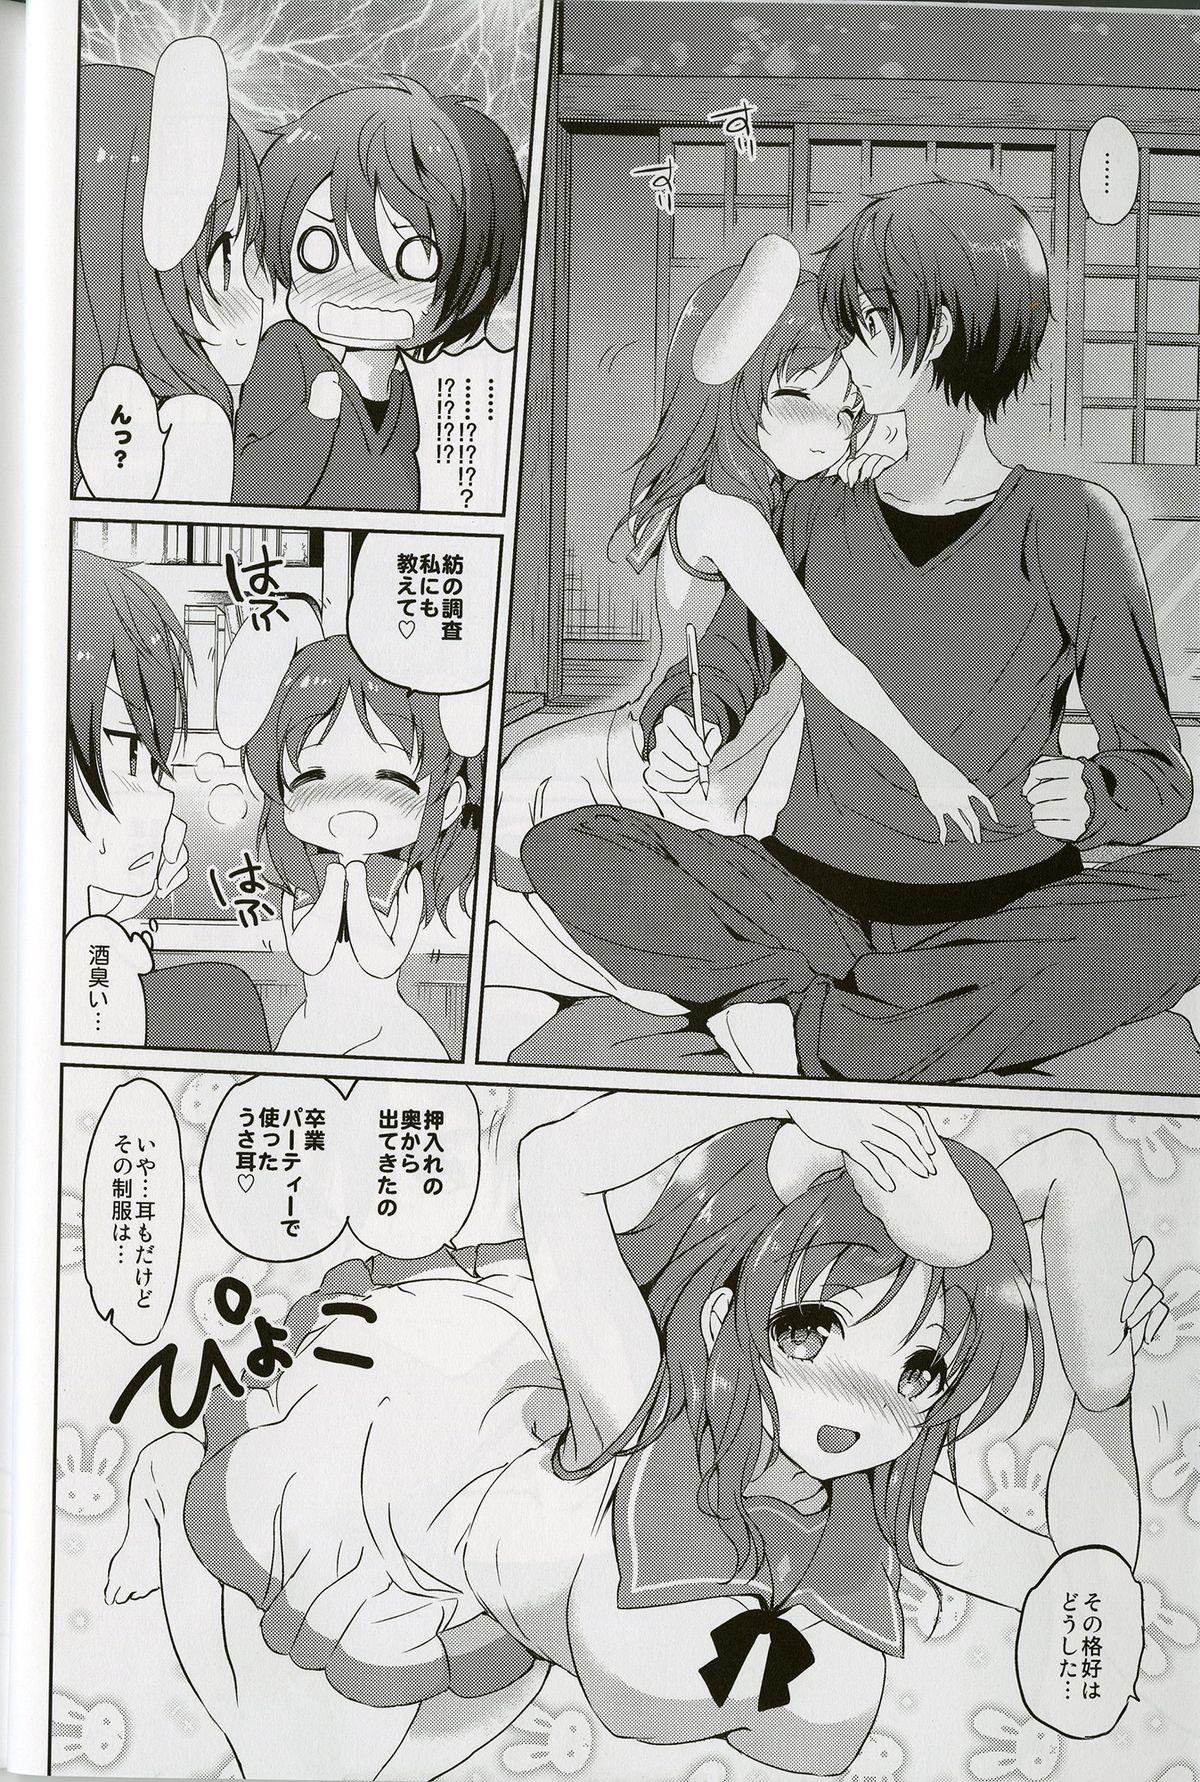 Woman Horoyoi Rabbit - Nagi no asukara Hot Girl Fucking - Page 4